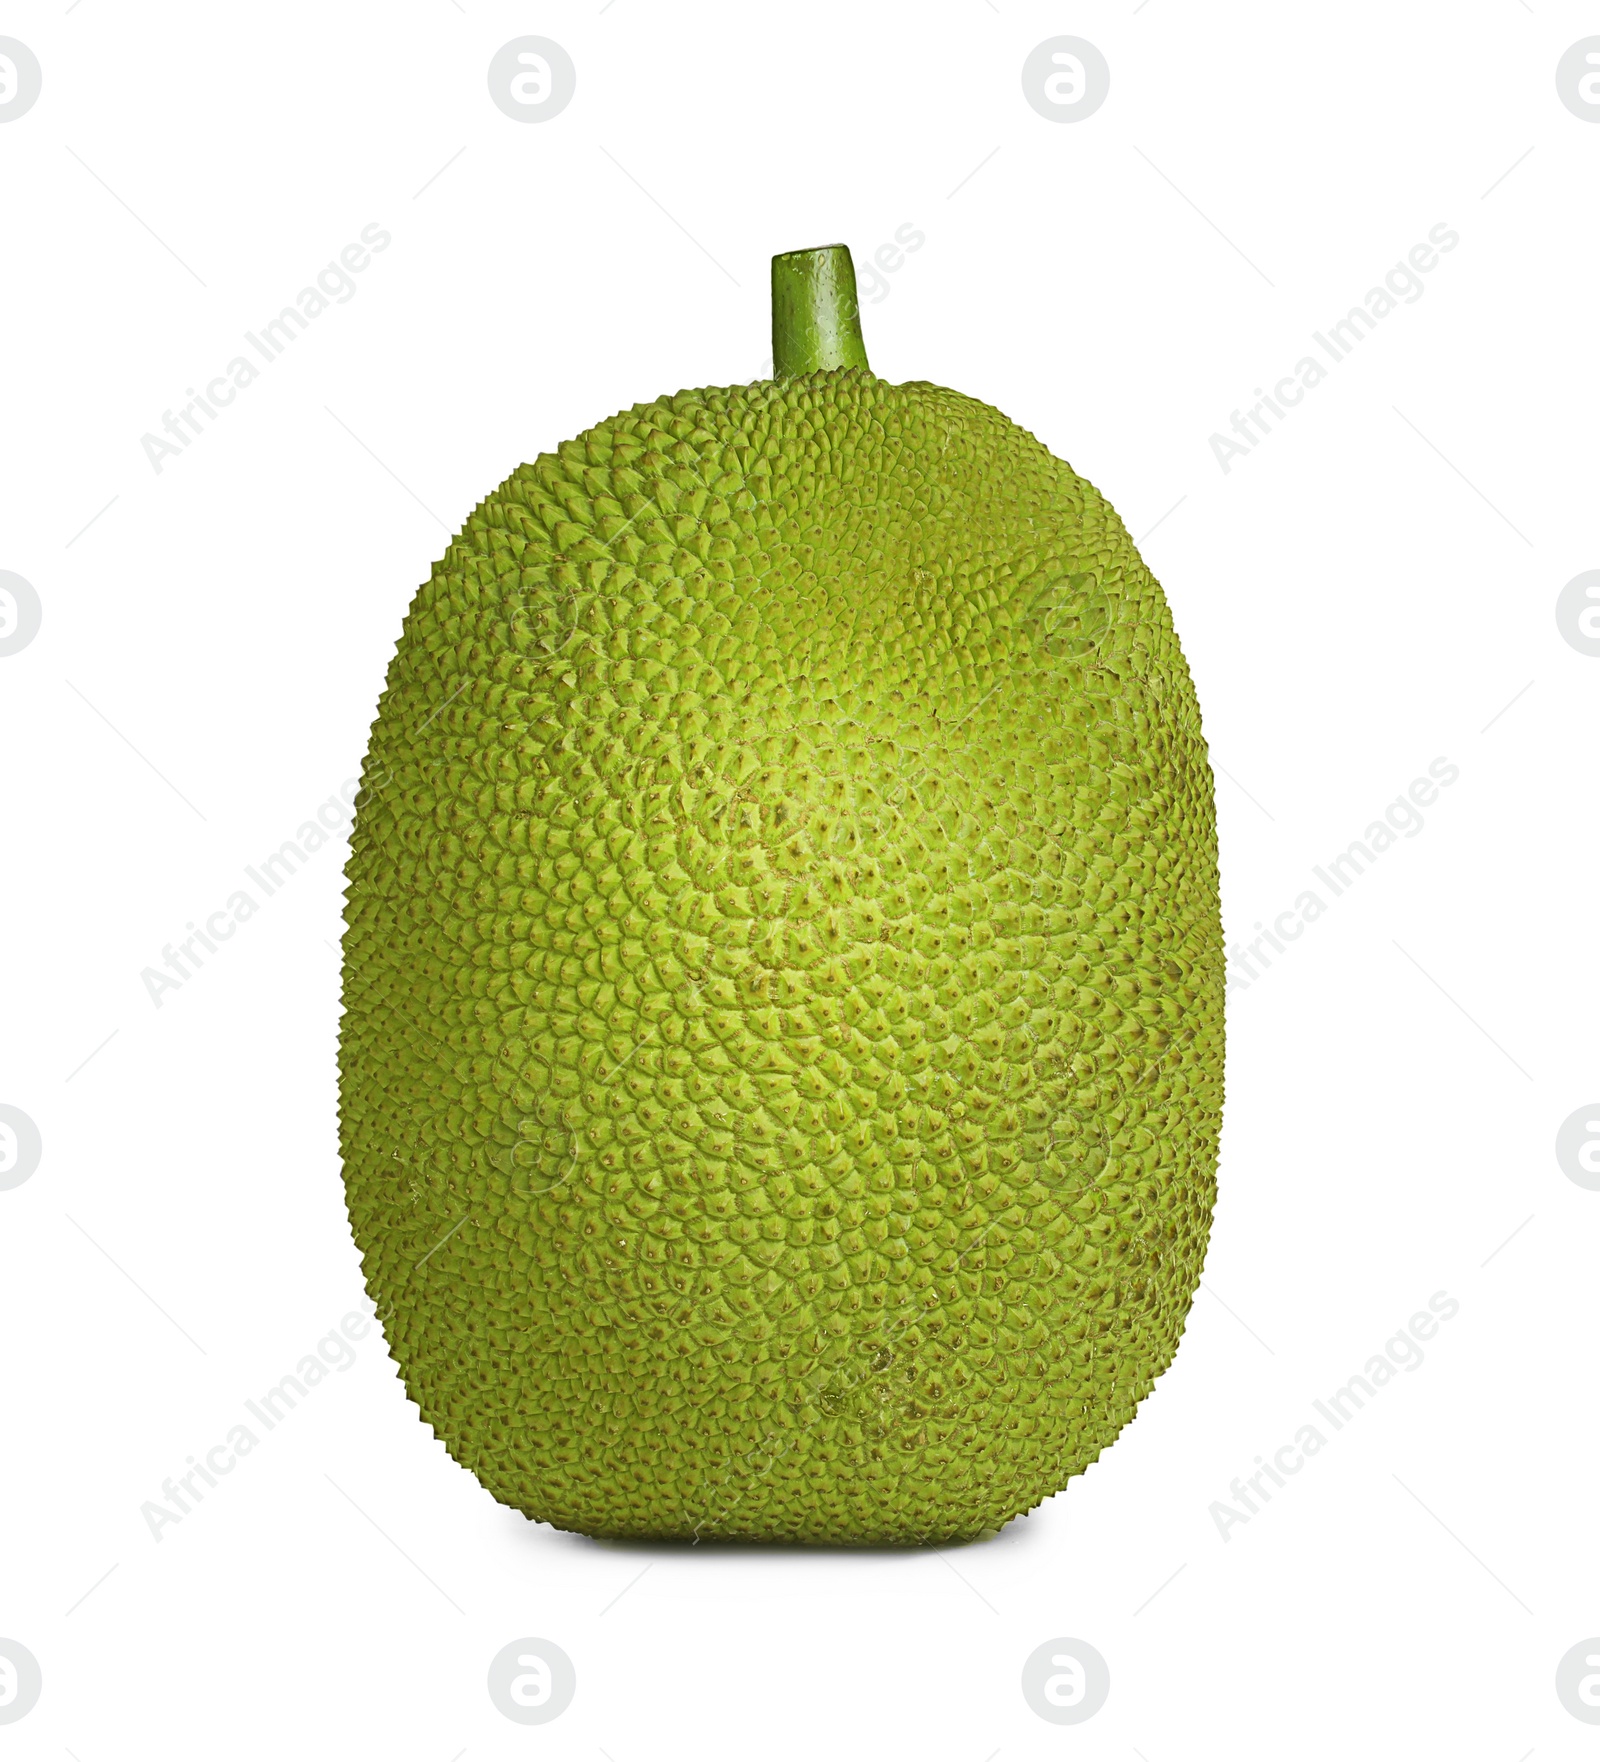 Photo of Delicious fresh exotic jackfruit isolated on white